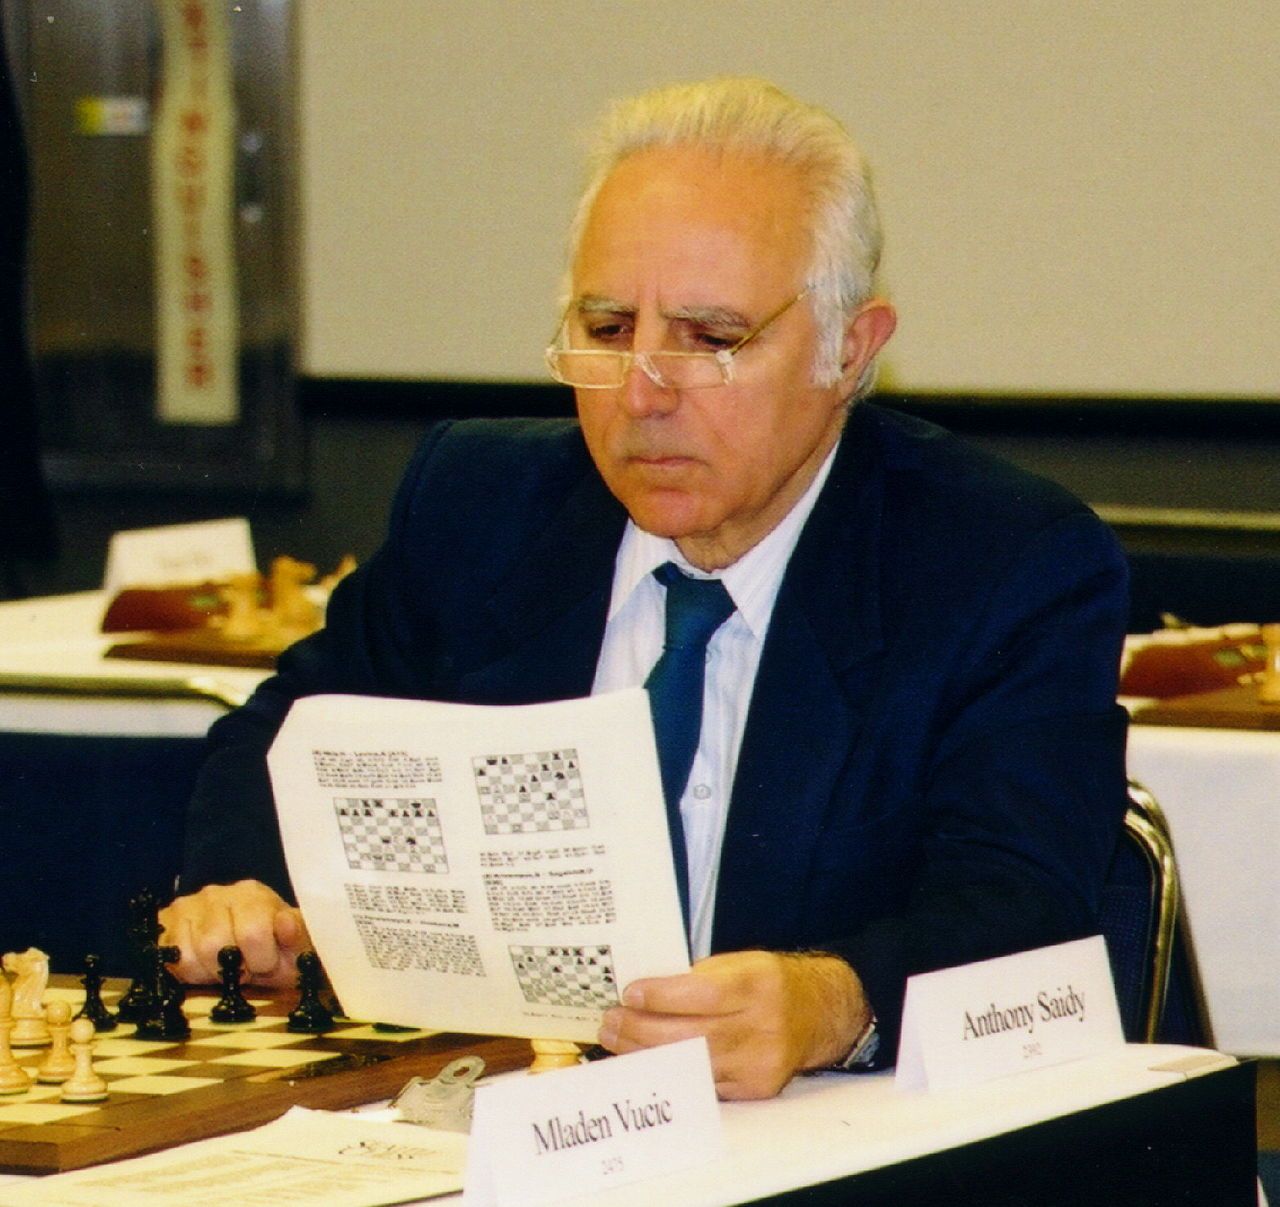 Livros encontrados sobre Lev polugaevsky grandmaster preparation